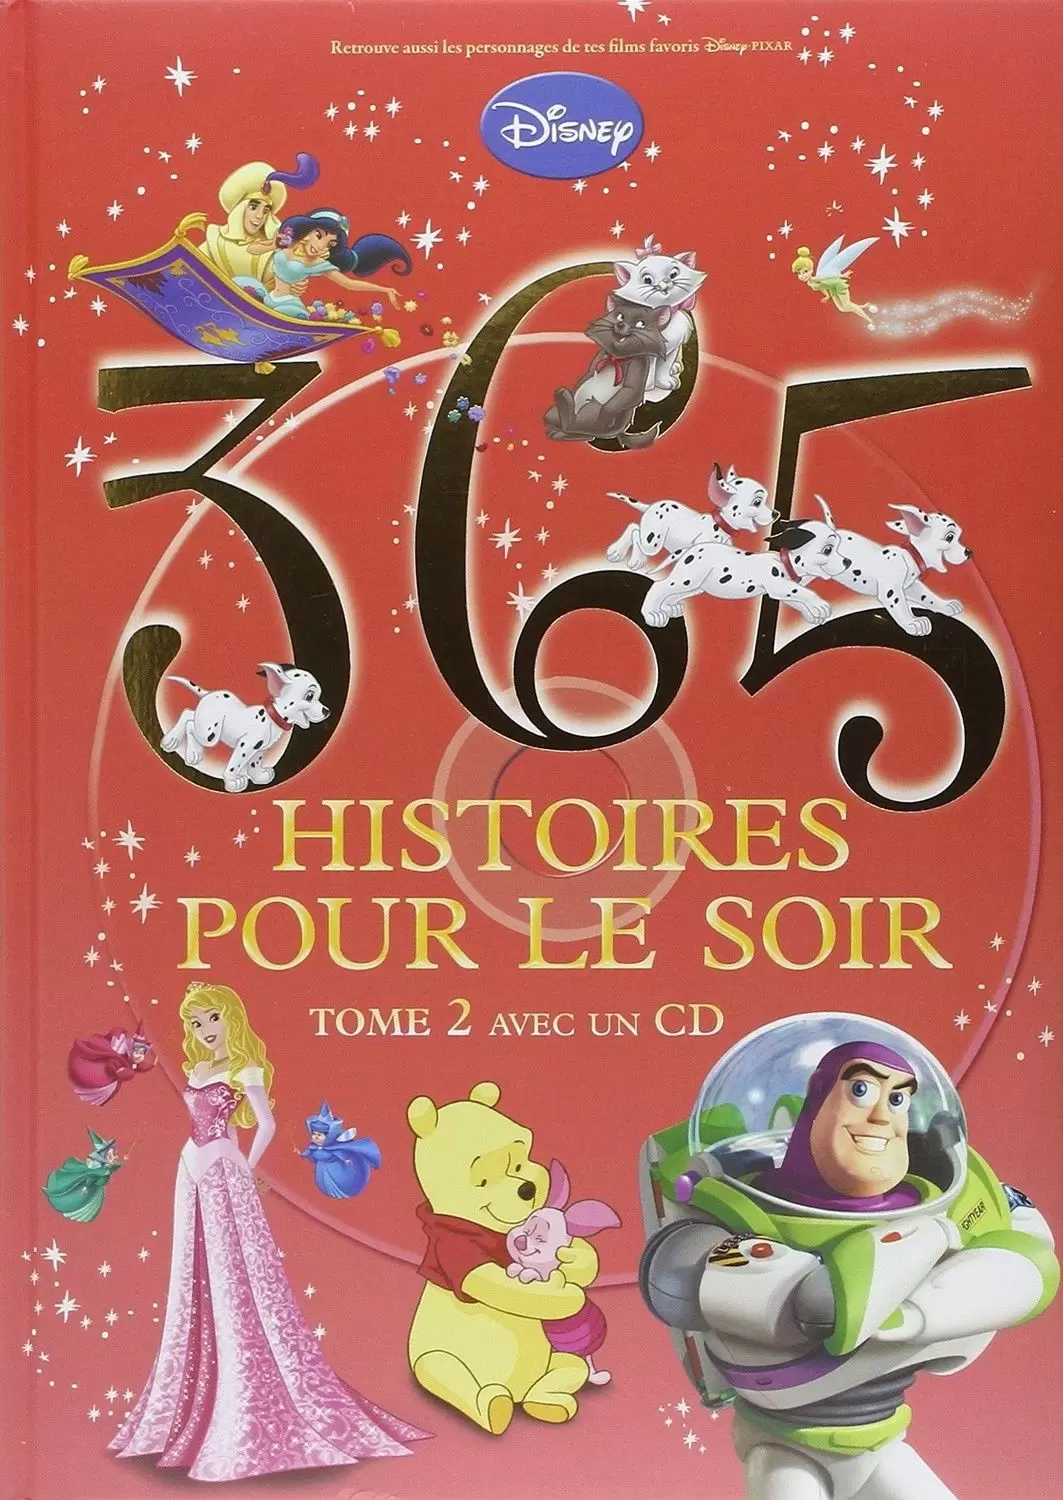 Disney - Histoires pour le soir et pour la semaine - 365 Histoires pour le soir - Tome 2 avec 1 CD